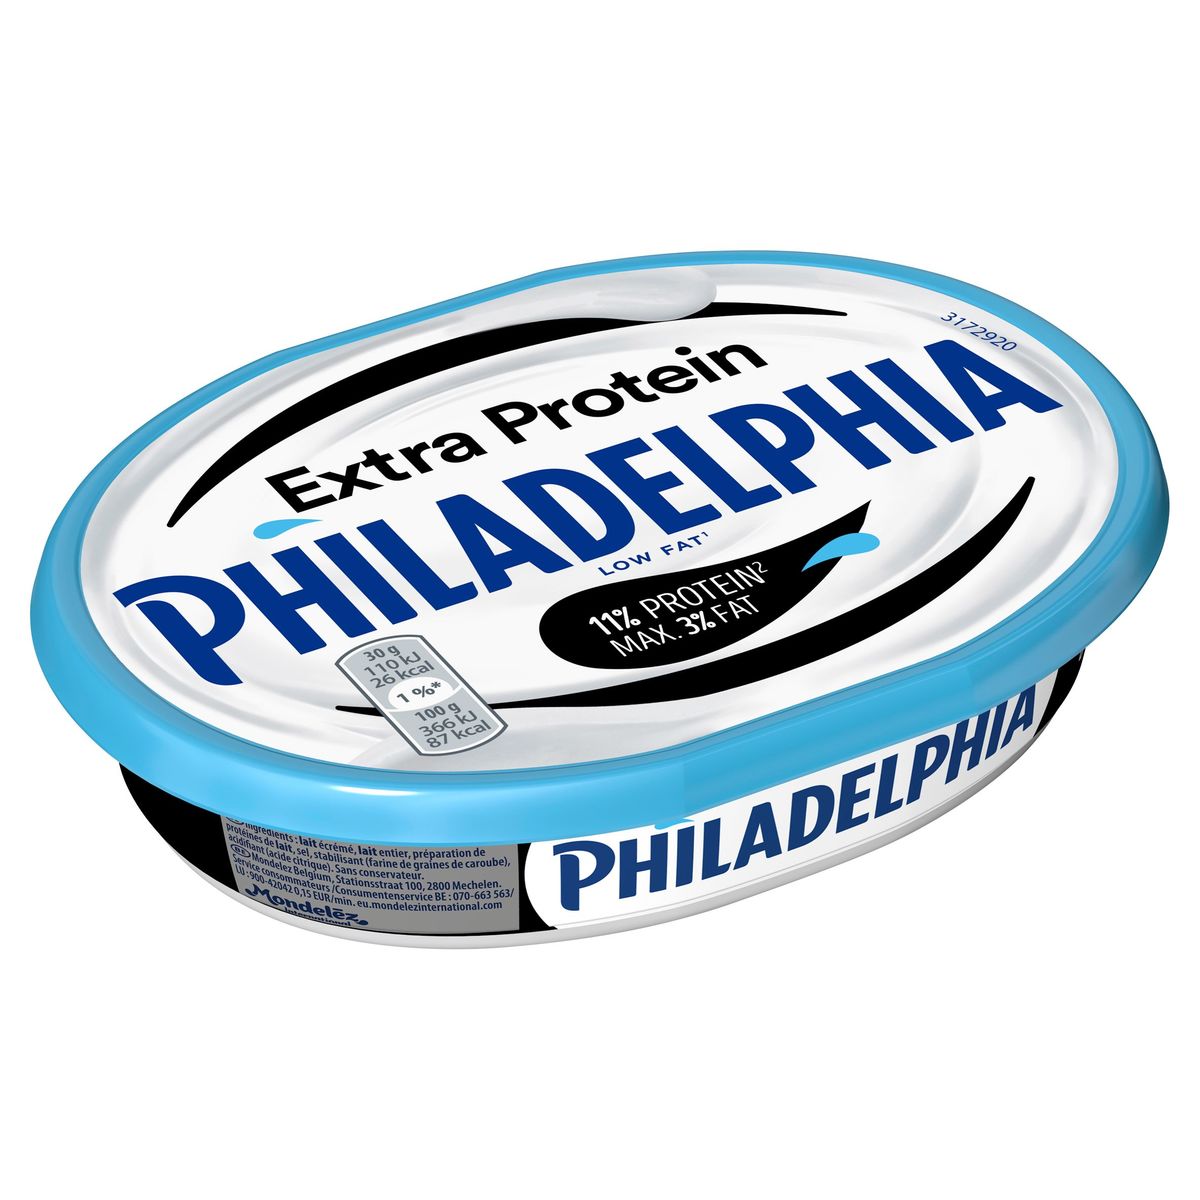 Philadelphia Extra Protein 175 g